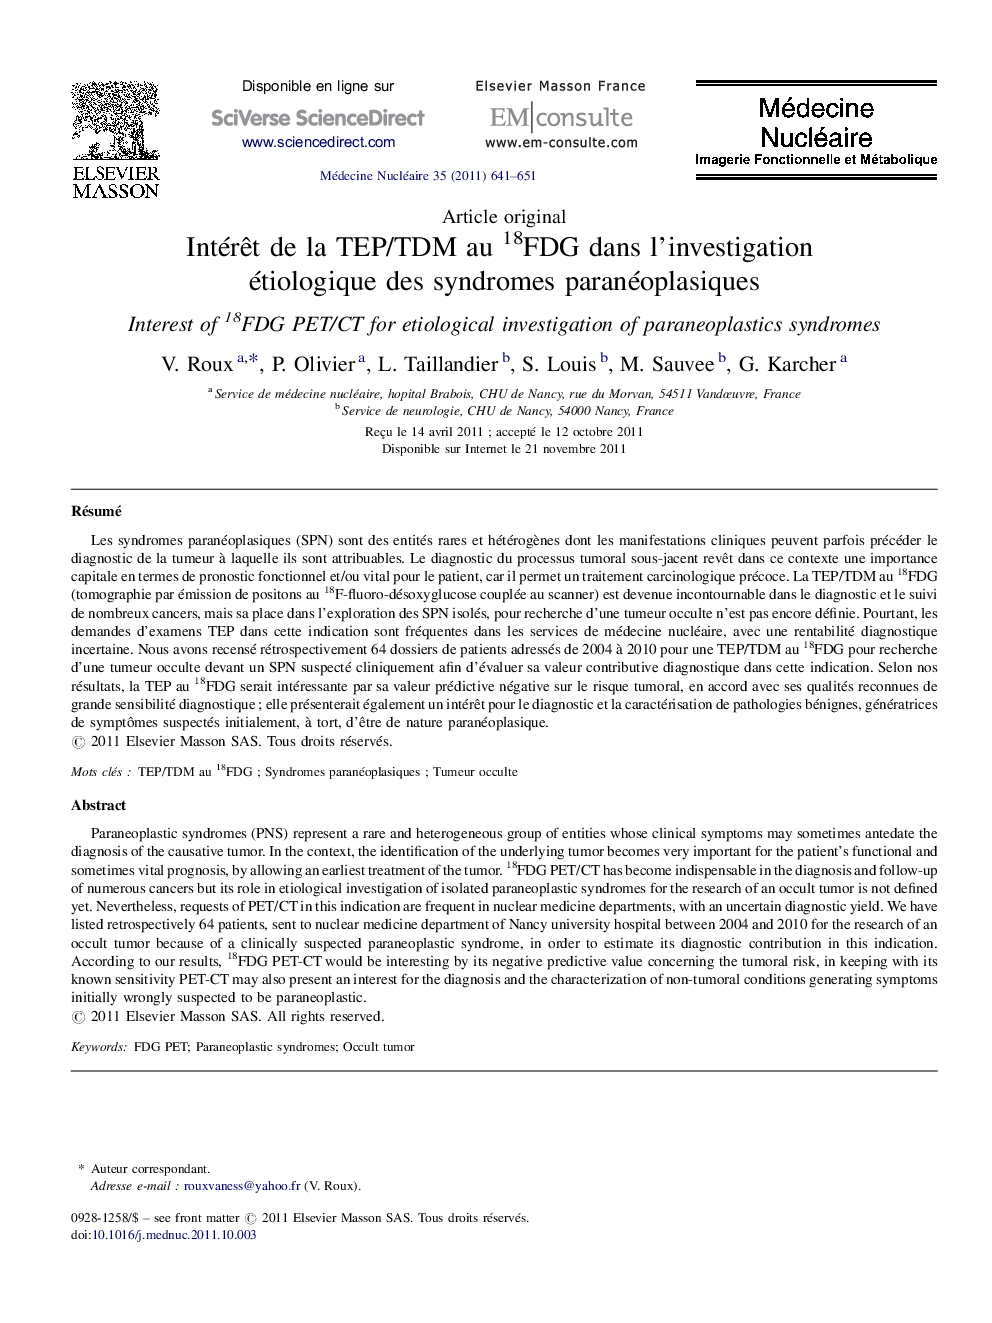 Intérêt de la TEP/TDM au 18FDG dans l’investigation étiologique des syndromes paranéoplasiques